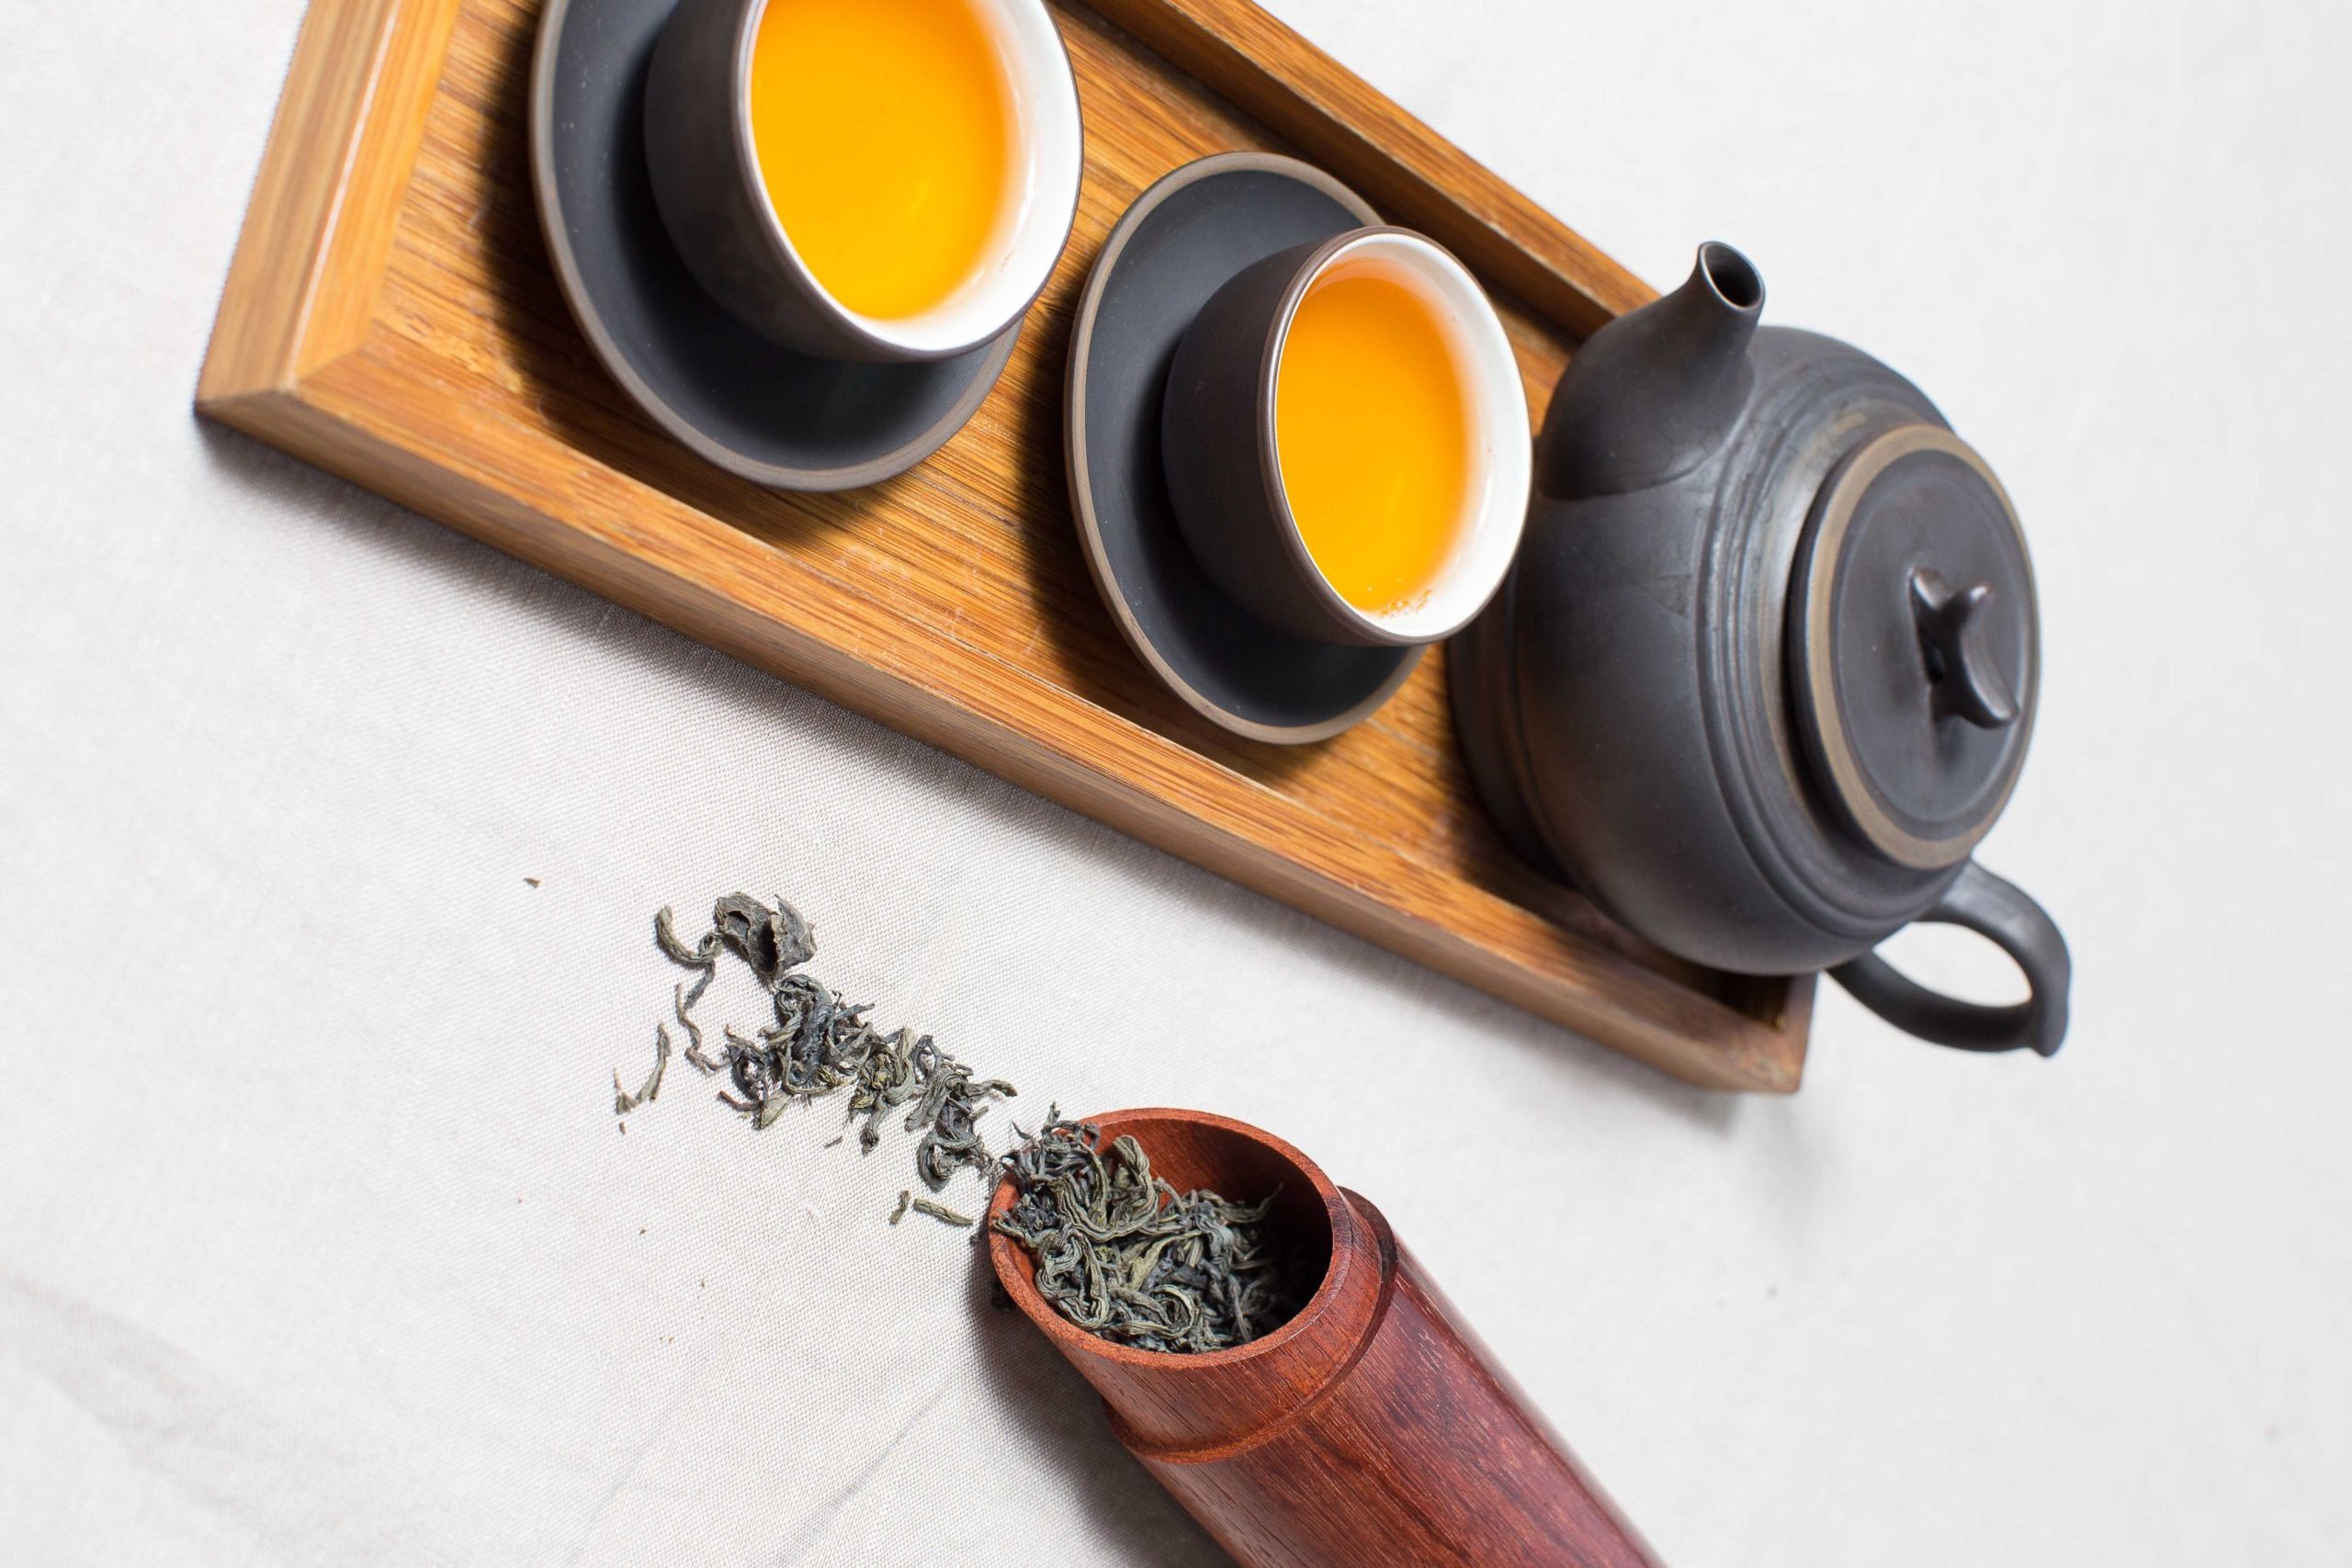 Sprievodca svetom čajov: čierny, biely alebo zelený čaj?